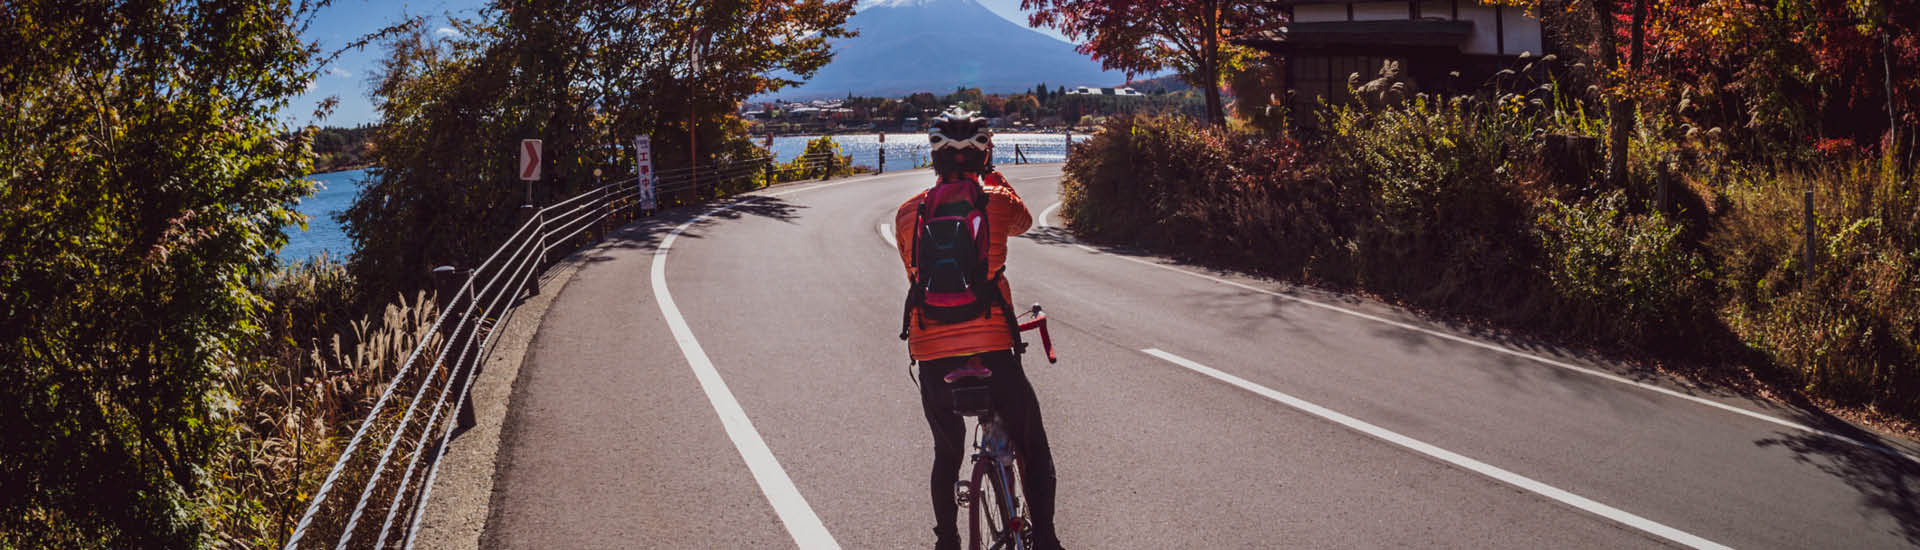 Ciclista de costas pedalando em rua com árvores ao redor e vista para o mar no horizonte.